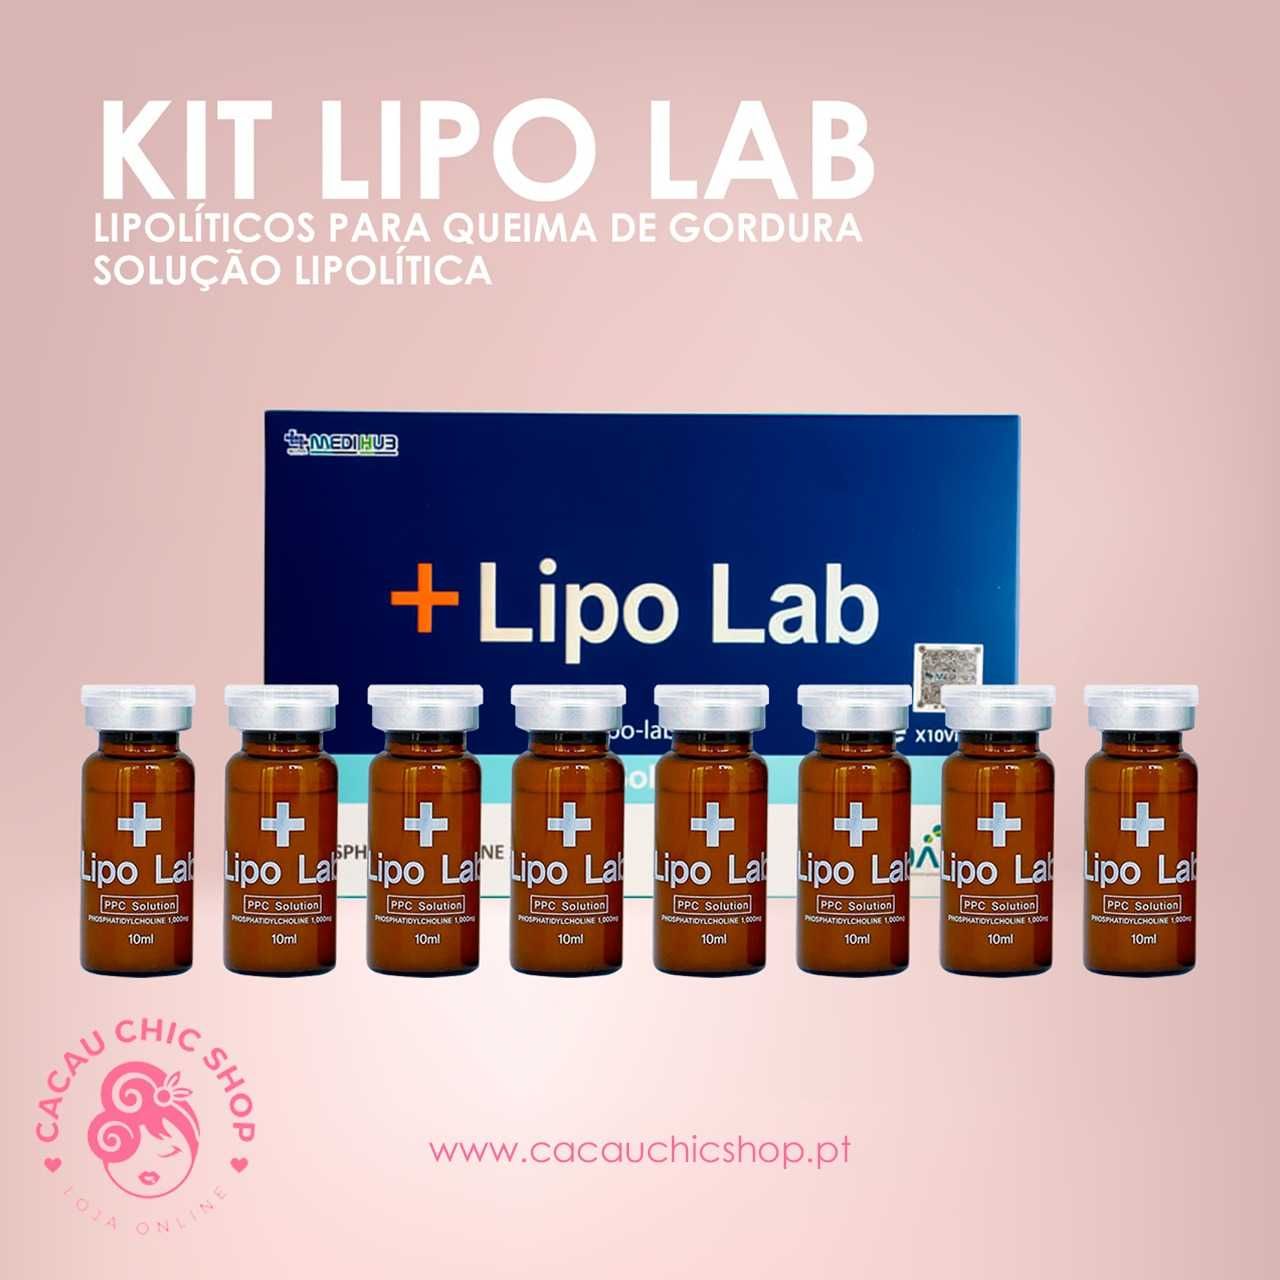 Kit Lipo Lab Lipolíticos Queima de Gordura Solução Lipolítica Lipolab